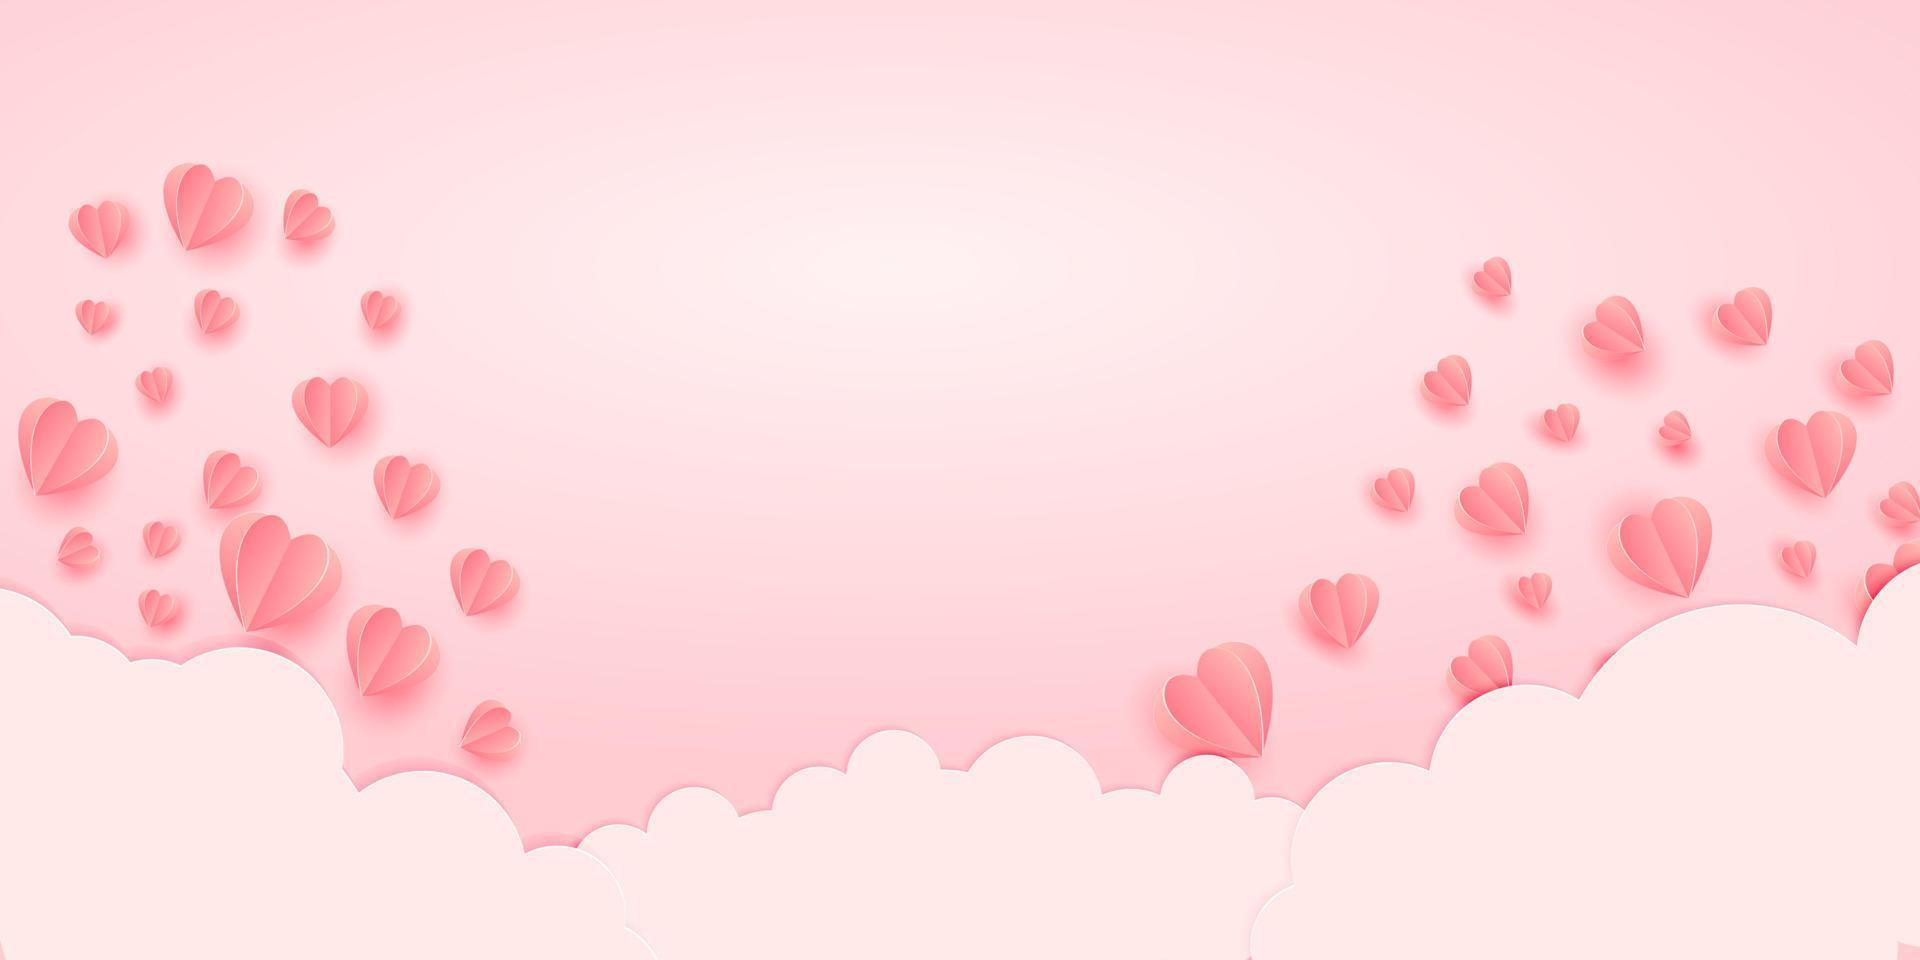 papper element i form av hjärta flygande på rosa bakgrund med moln. vektor symboler av kärlek för Lycklig kvinnors, mammas, hjärtans dag, födelsedag hälsning kort design.